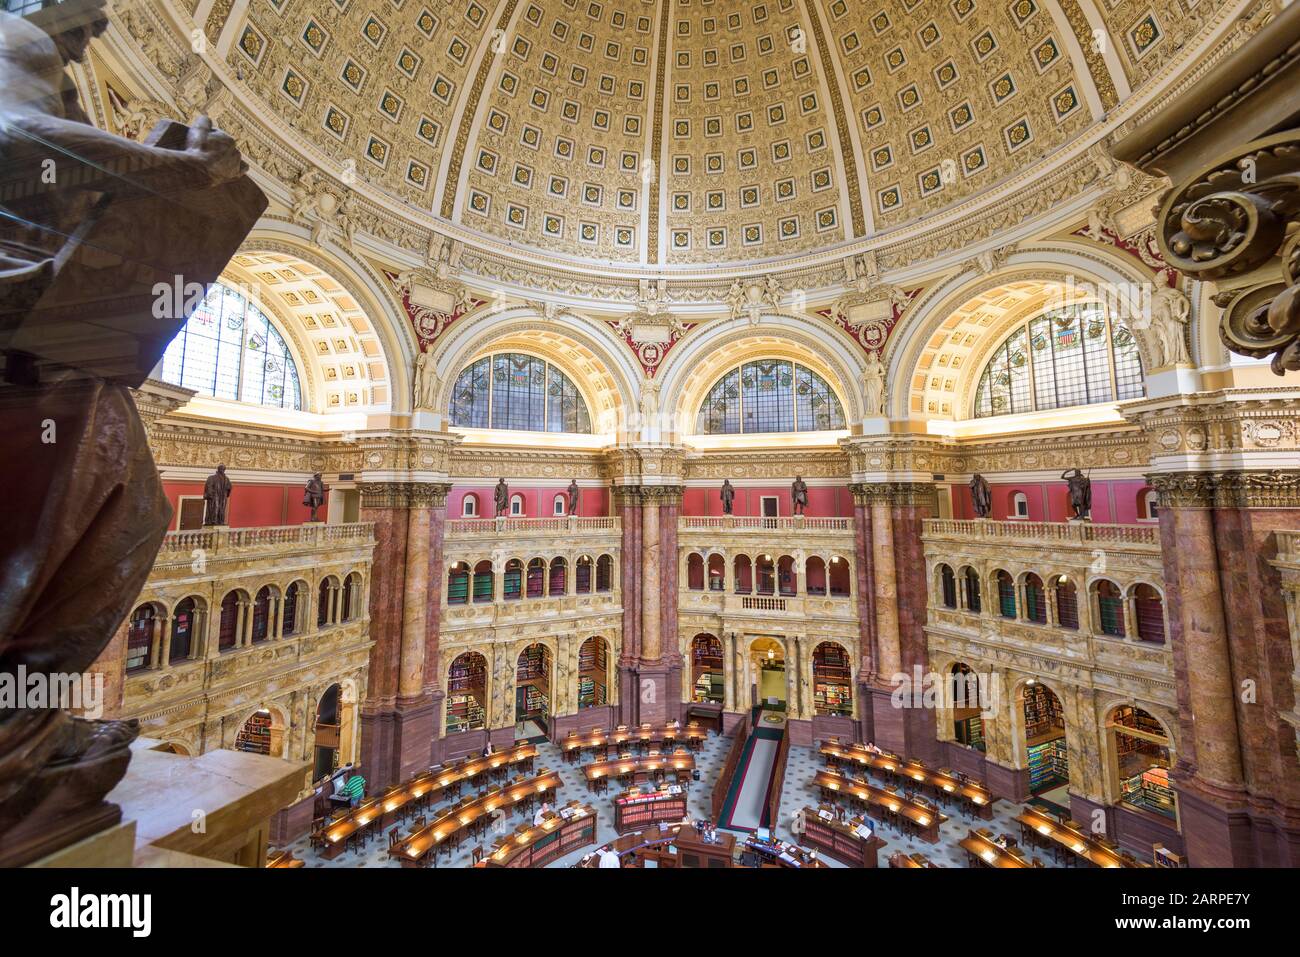 Washington - 12 DE ABRIL de 2015: La Biblioteca del Congreso en Washington. La biblioteca sirve oficialmente al Congreso de los Estados Unidos. Foto de stock